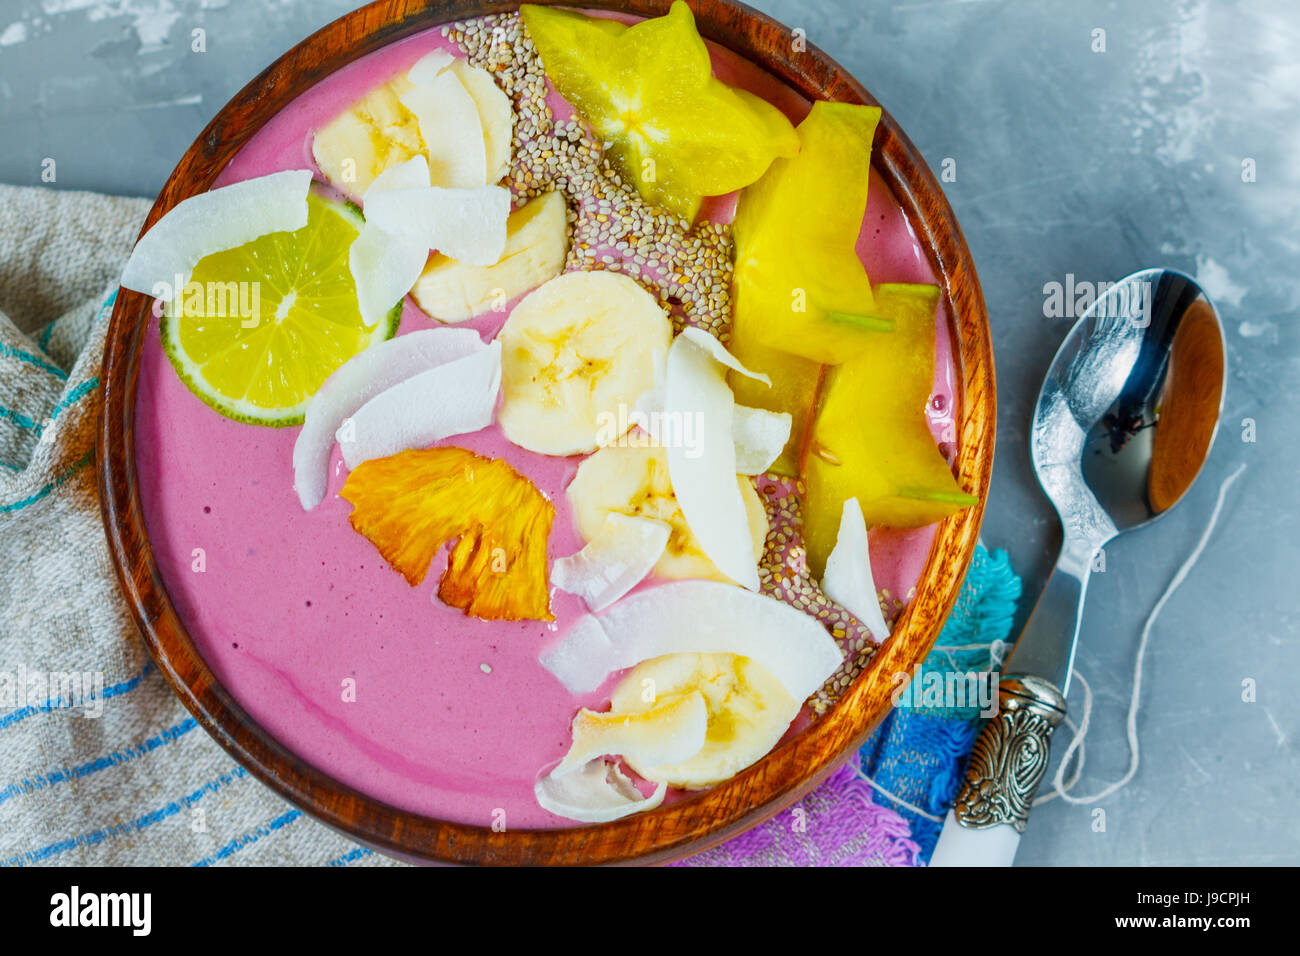 Ananas bananen kokosnuss -Fotos und -Bildmaterial in hoher Auflösung ...